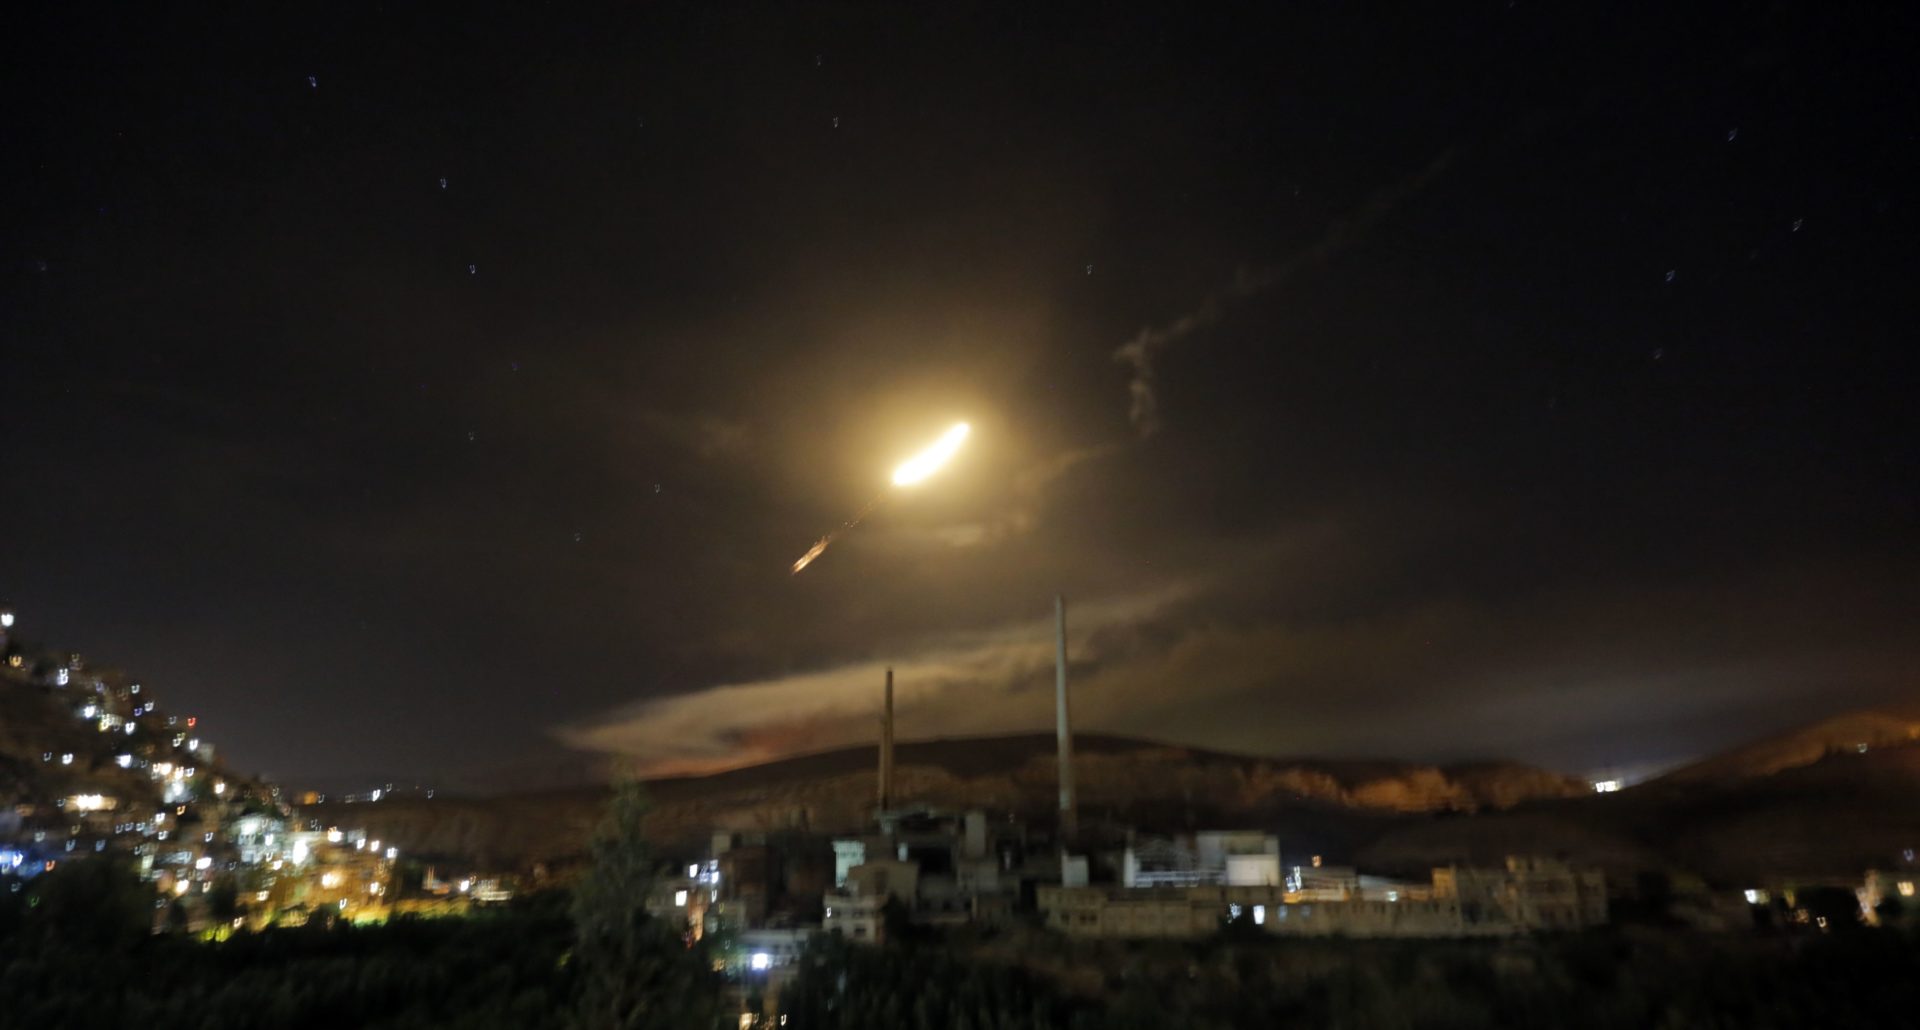 A szíriai légvédelem rakétái láthatóak Damaszkusz felett 2018. május 10-én, Szíriában. Hivatalos szíriai források szerint a légvédelem az izraeli hadsereg által indított légitámadásra reagált. EPA/YOUSSEF BADAWI 